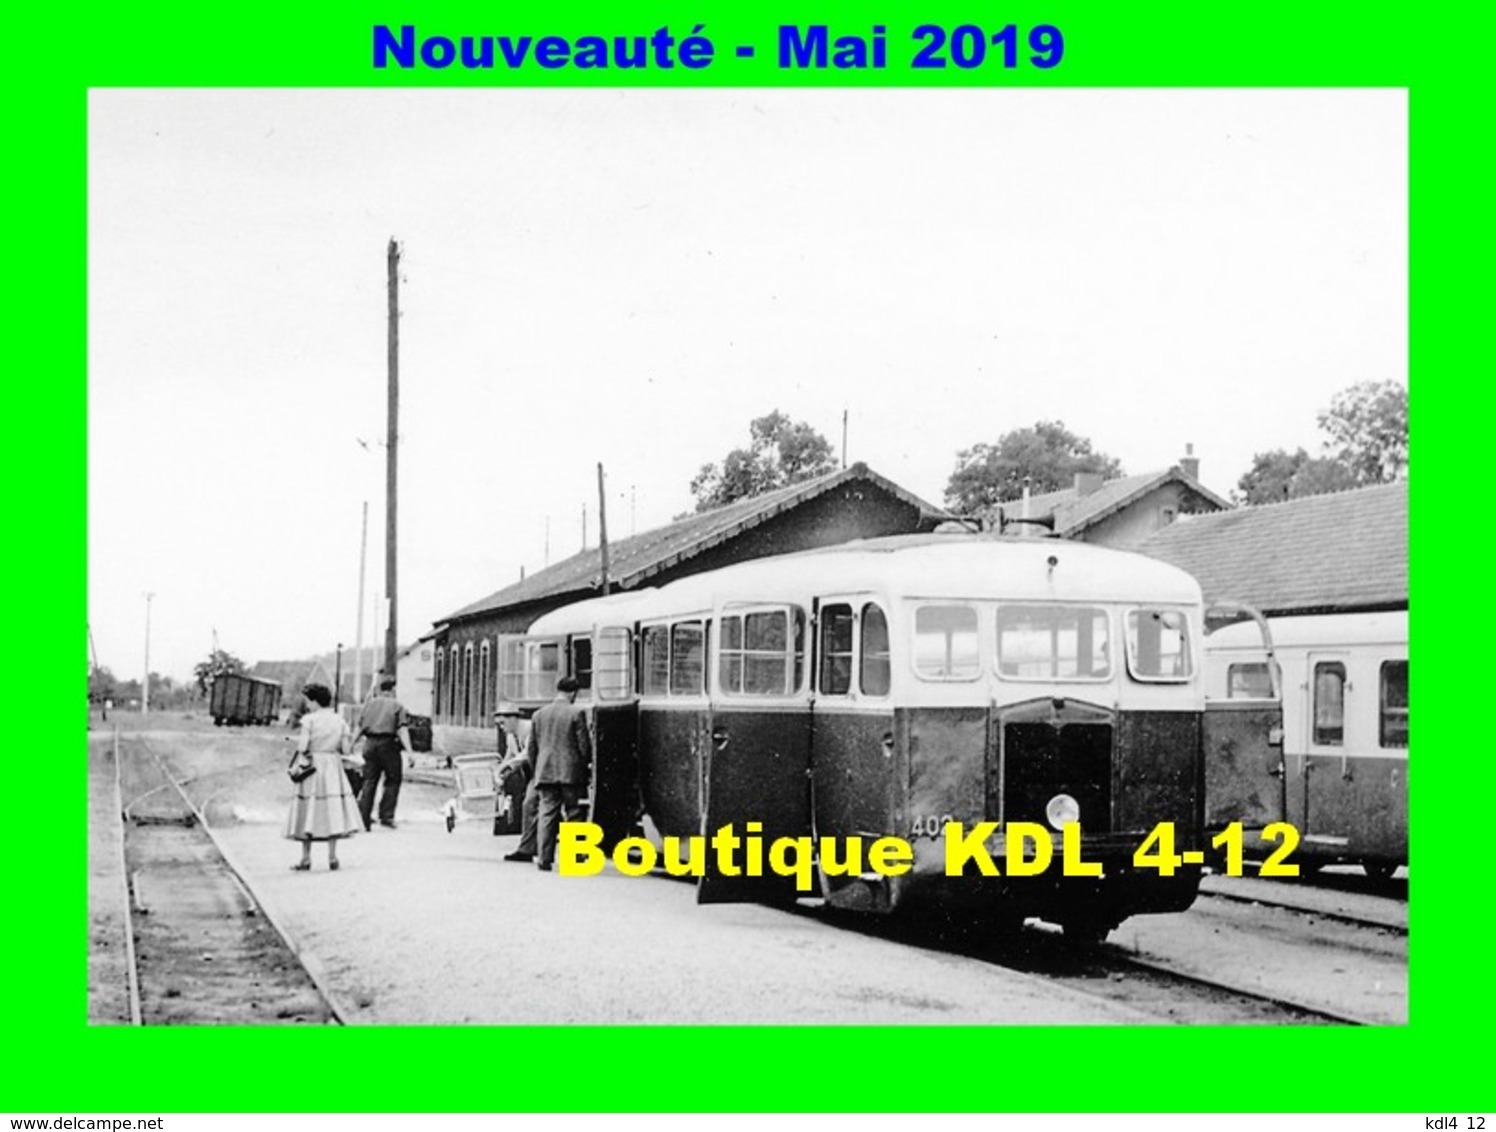 AL 572 - Autorail De Dion ND N° 402 En Gare - TOULON SUR ARROUX - Saône Et Loire CFD - Autres & Non Classés